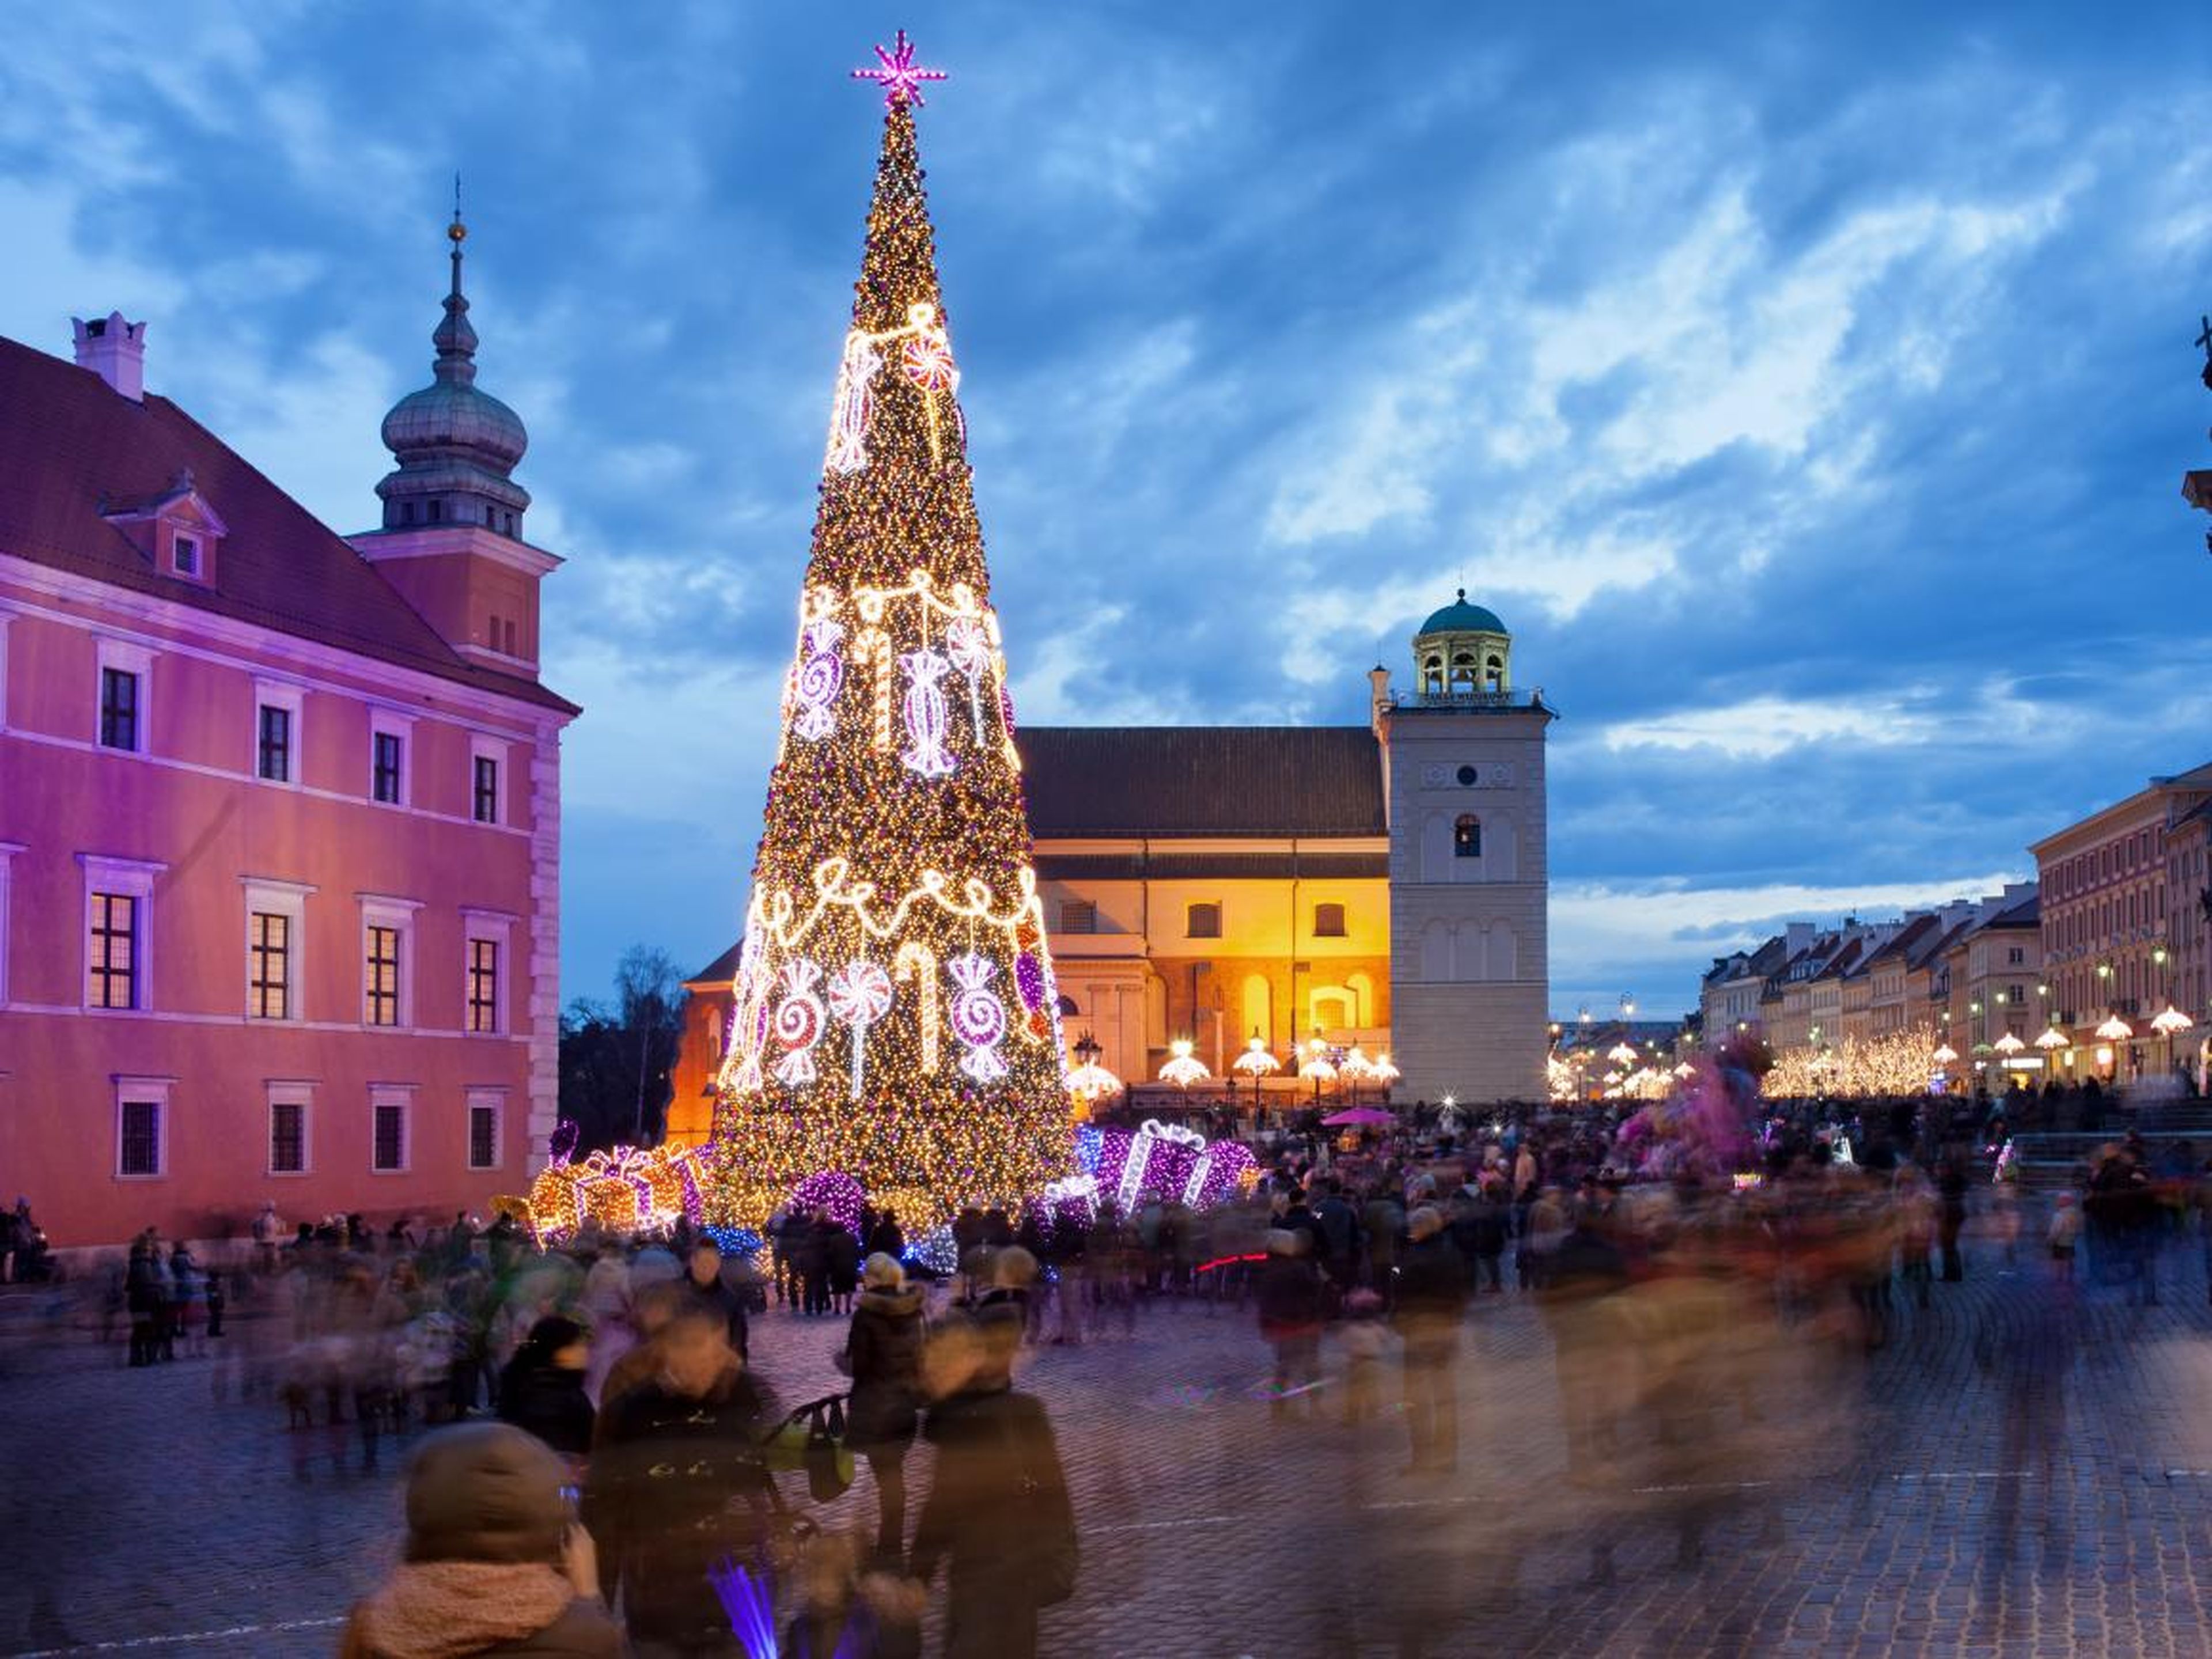 Árbol de Navidad y la gente en la Plaza del Castillo en el casco antiguo de Varsovia, Polonia, iluminada al atardecer.